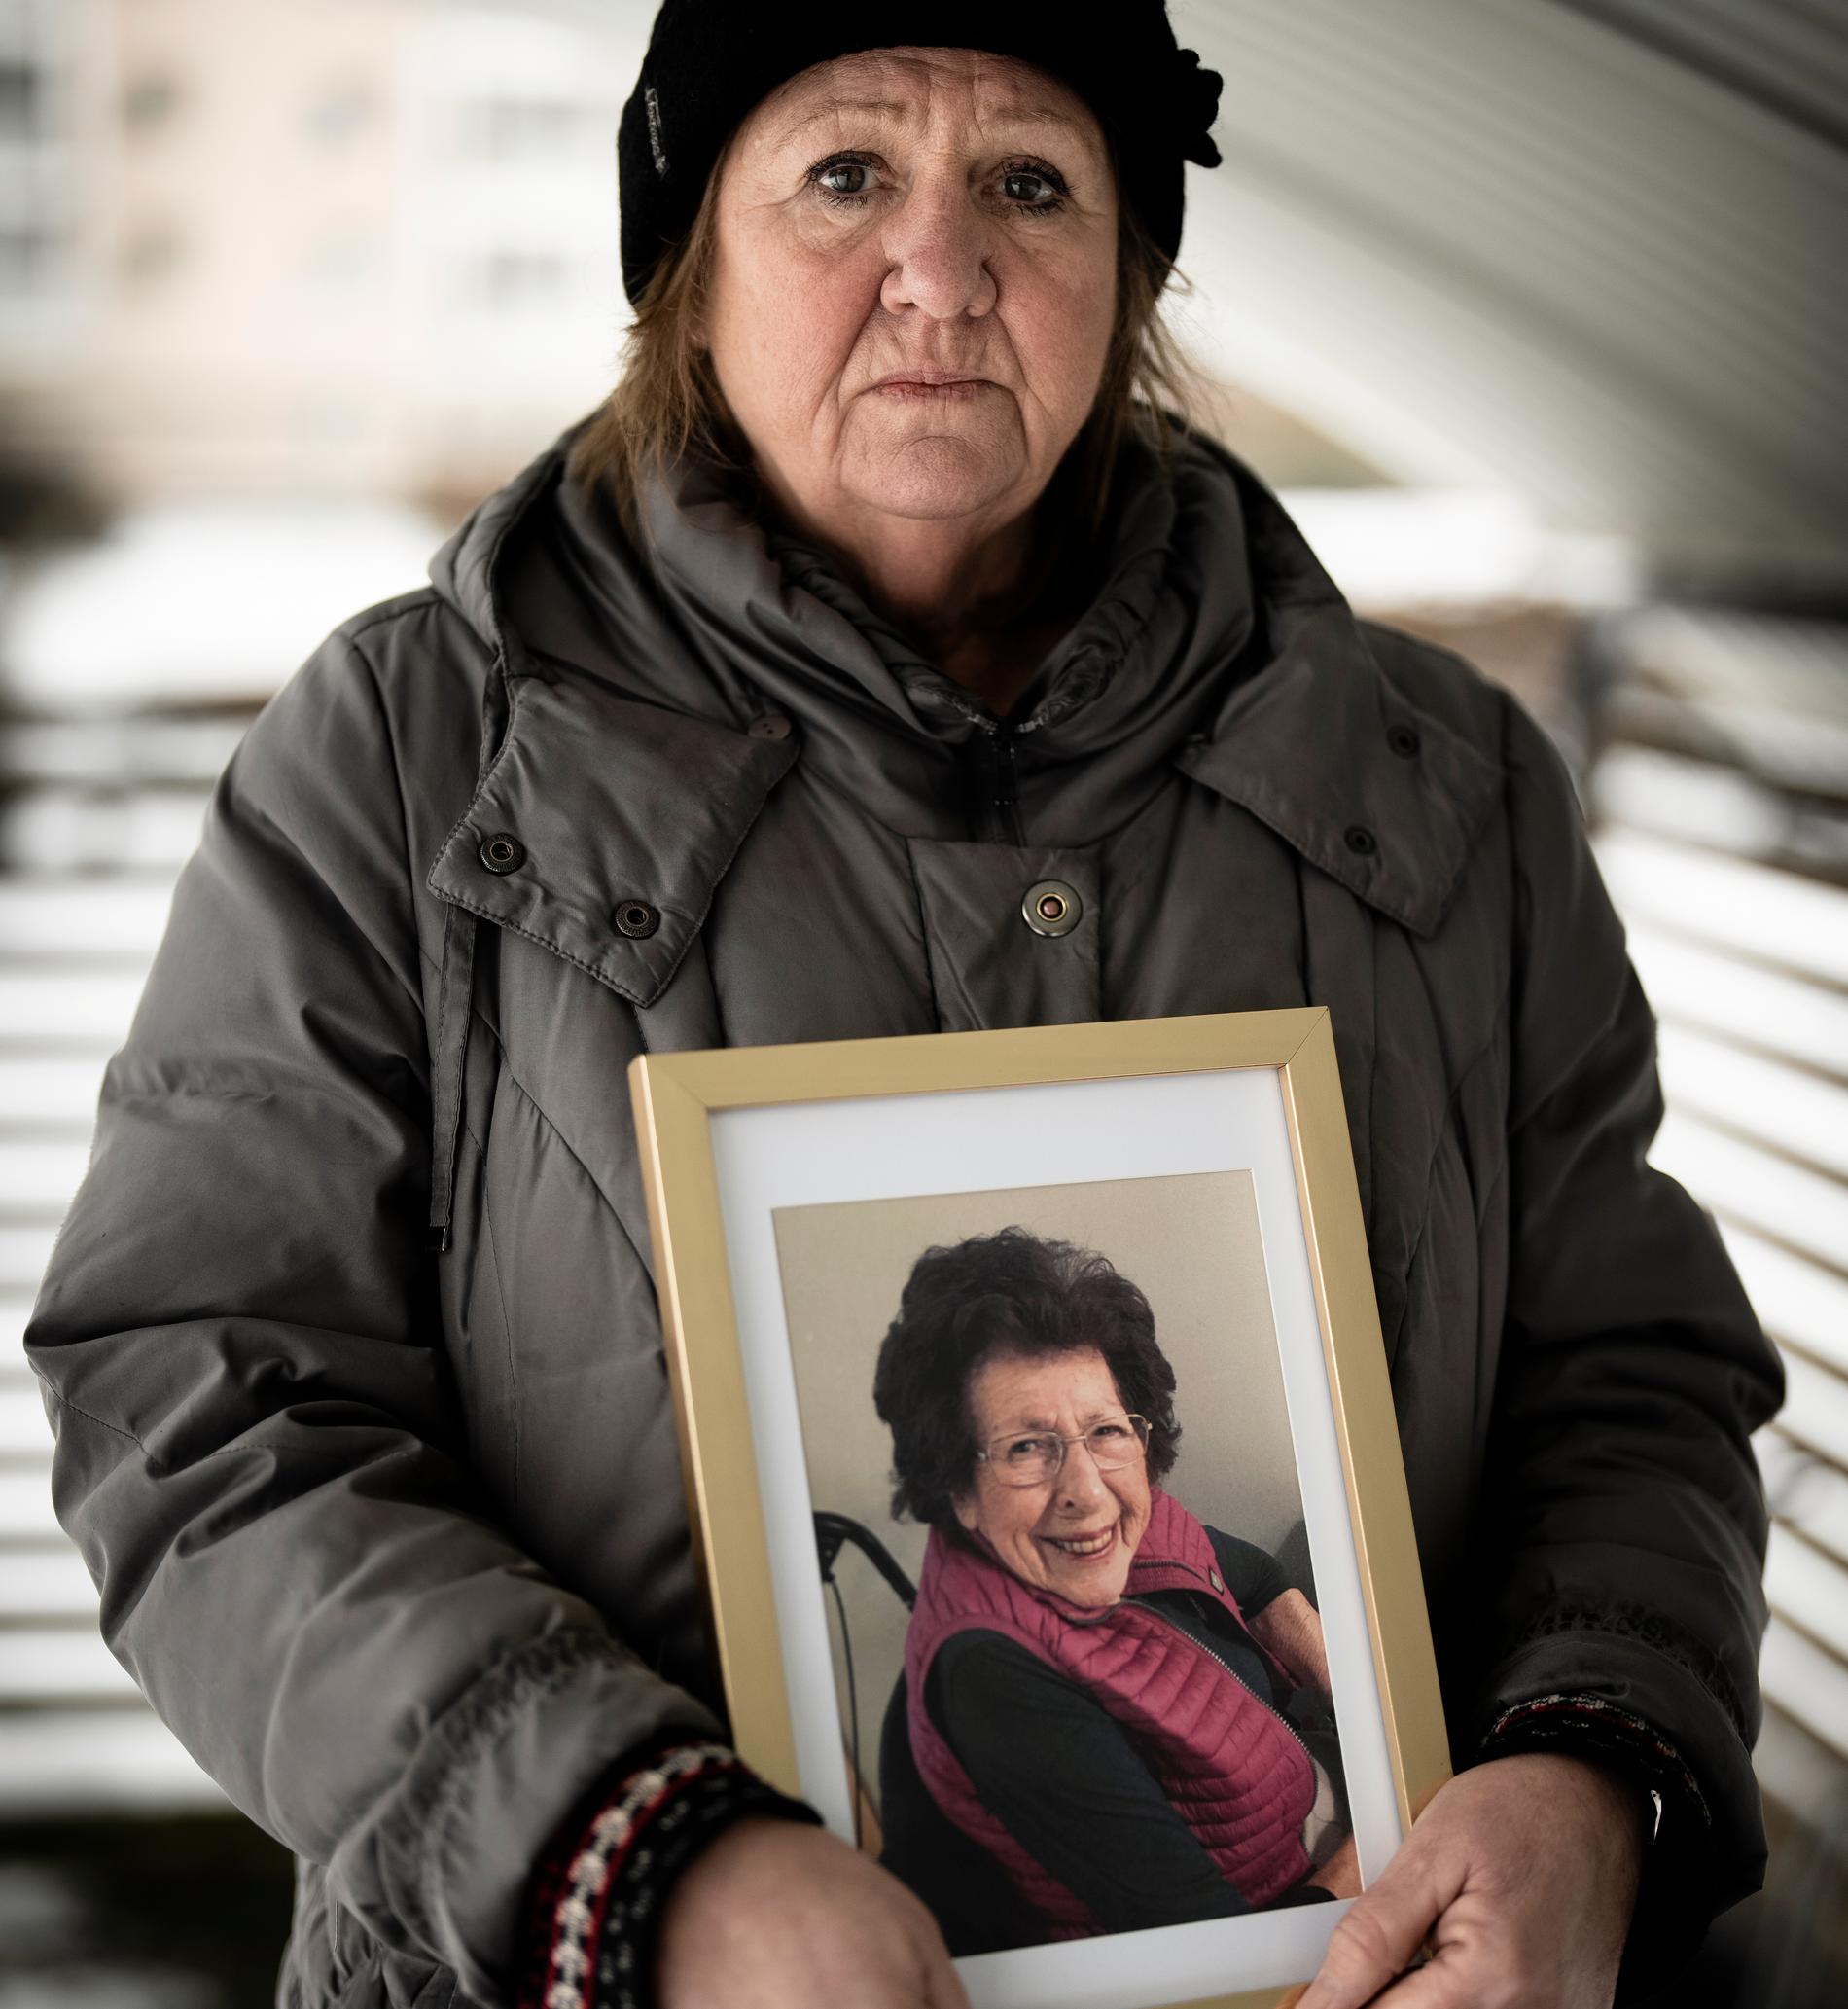 Anna-Lisa dog på äldreboendet Kaverös äng i Göteborg. ”Det var fruktansvärt att se”, säger dottern Carina Larusson. 